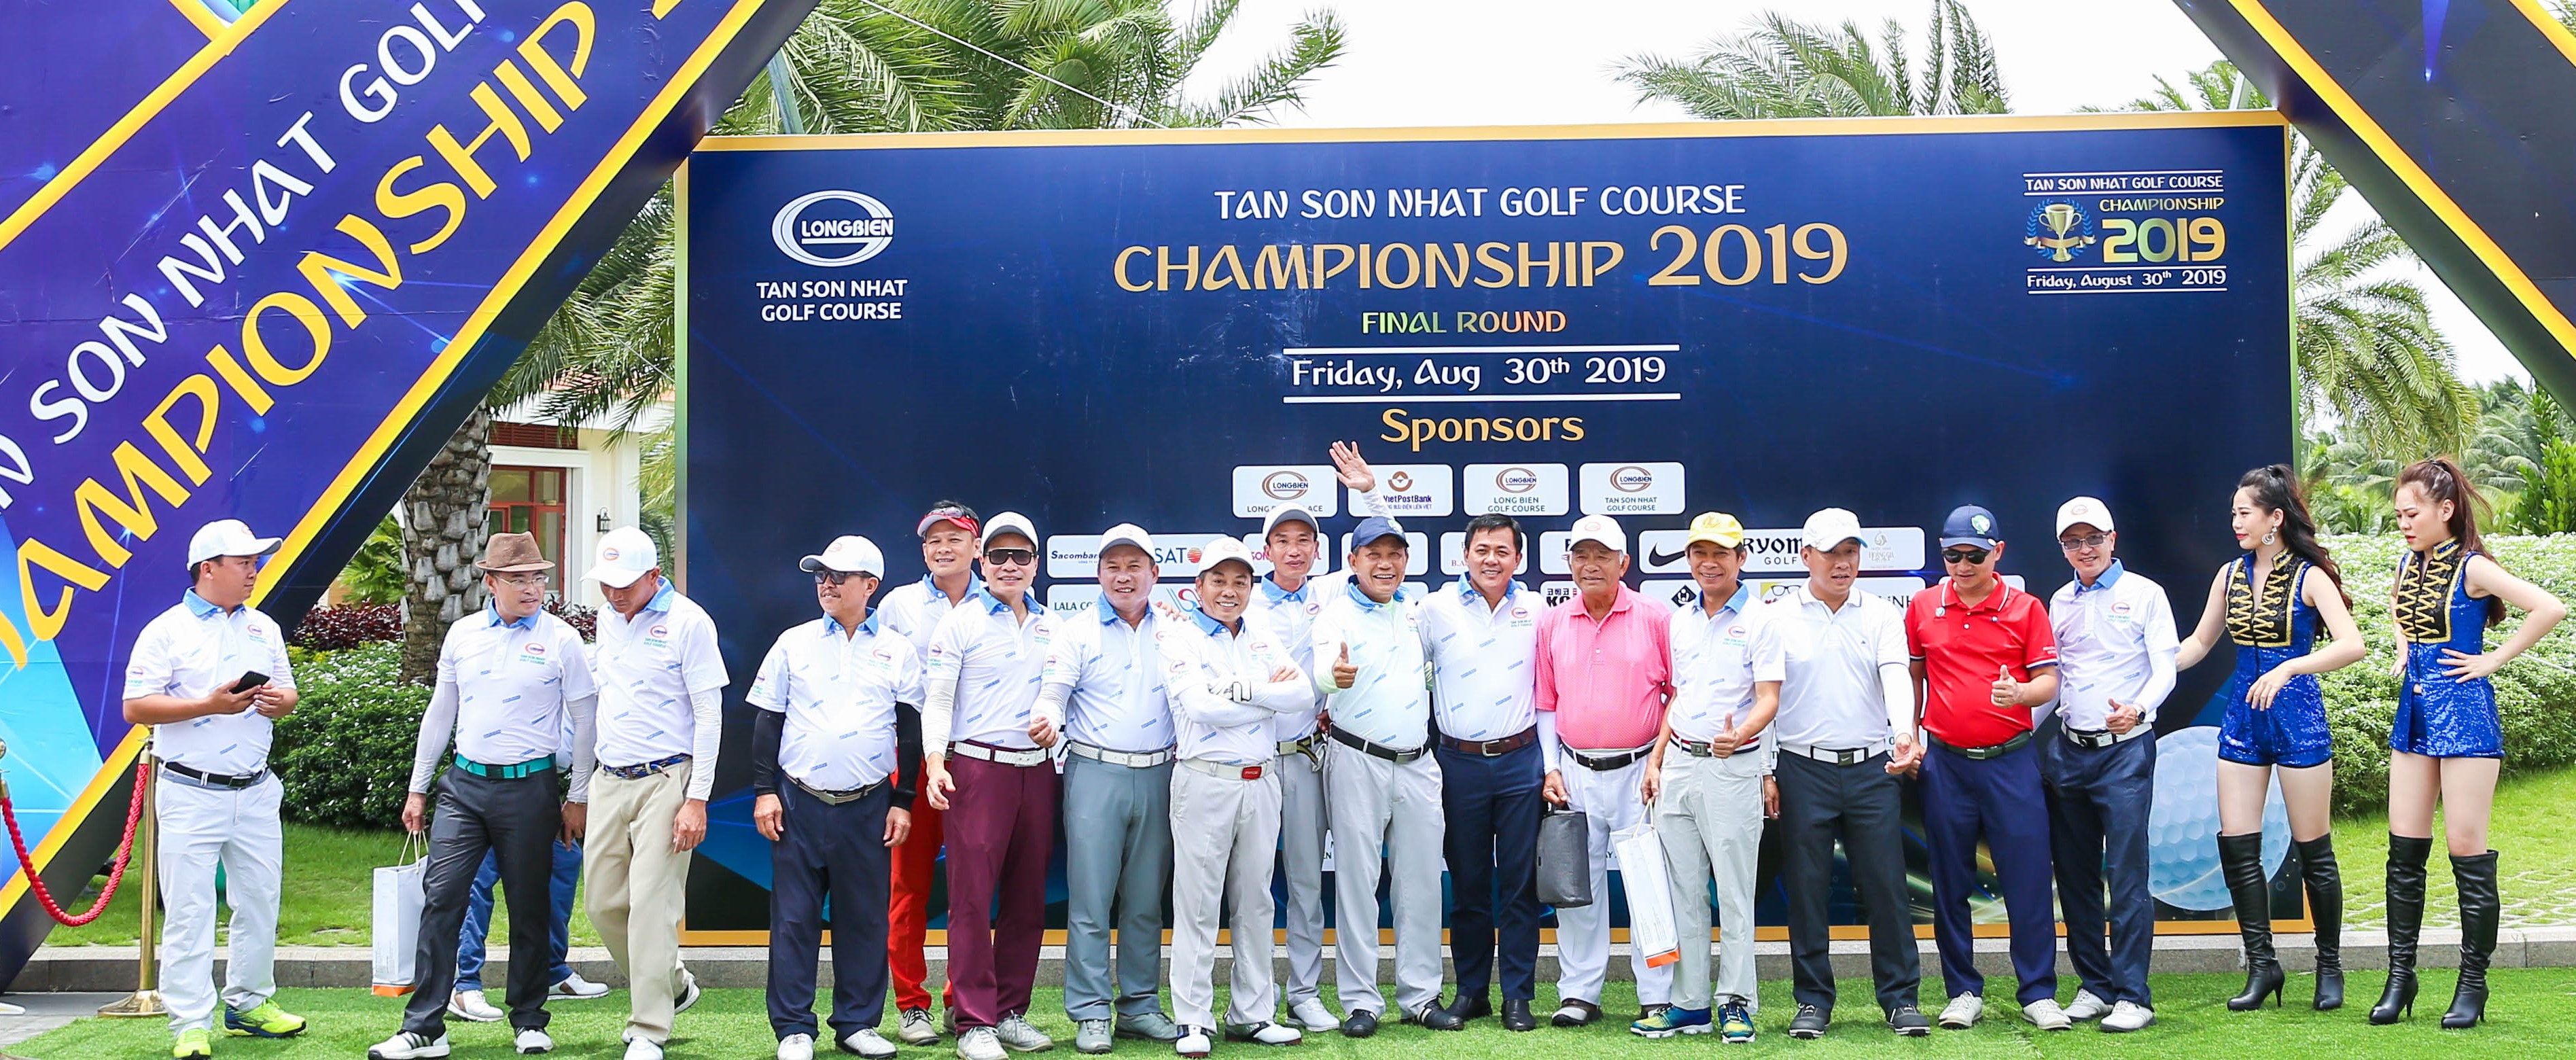 Giải Tan Son Nhat Golf Course Championship 2019: Đến hồi kết